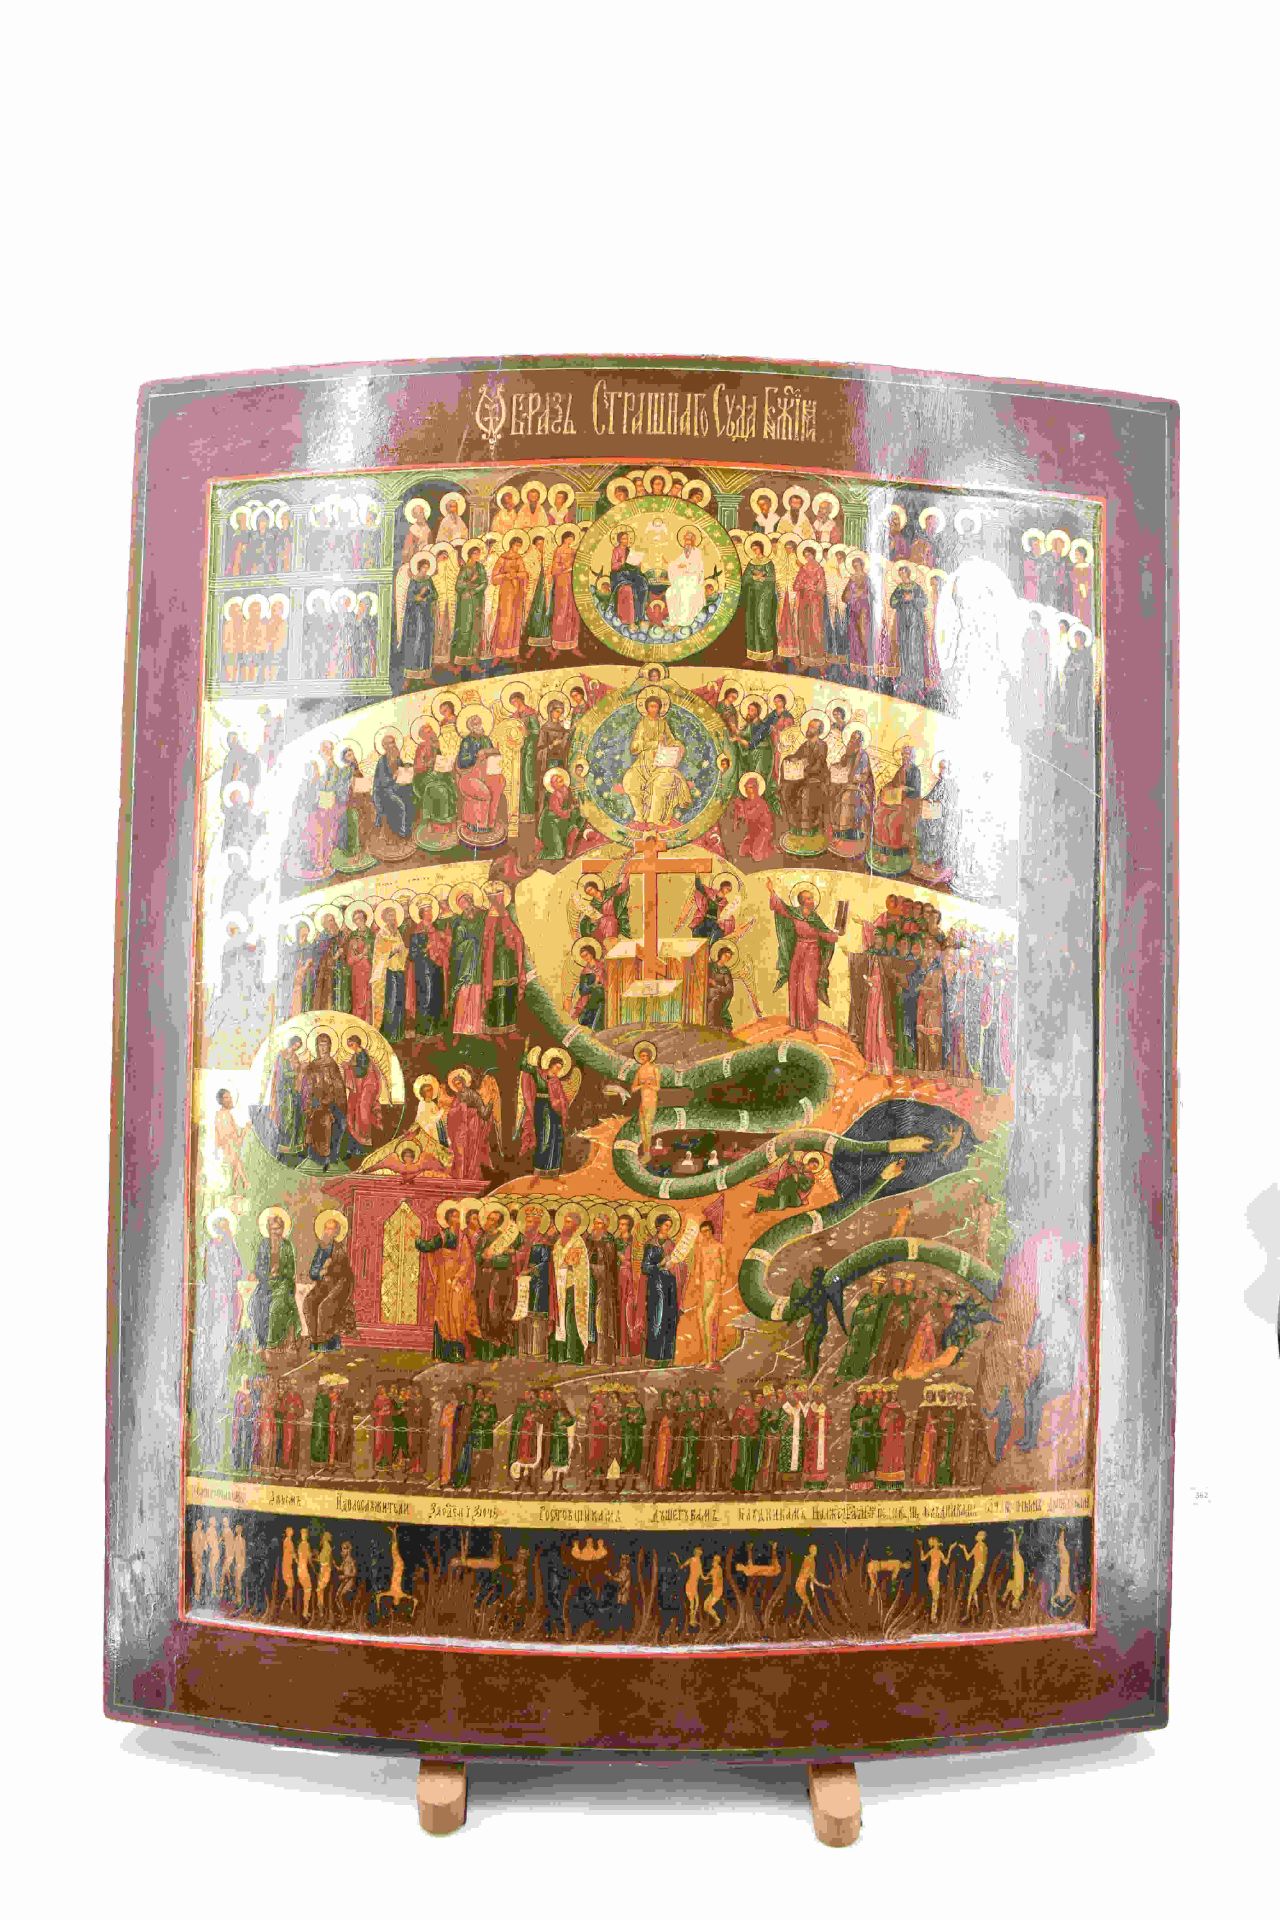 Große Ikone mit dem Jüngsten Gericht, Russland, Mstjora - 2. H. 19. Jh. - Image 10 of 26